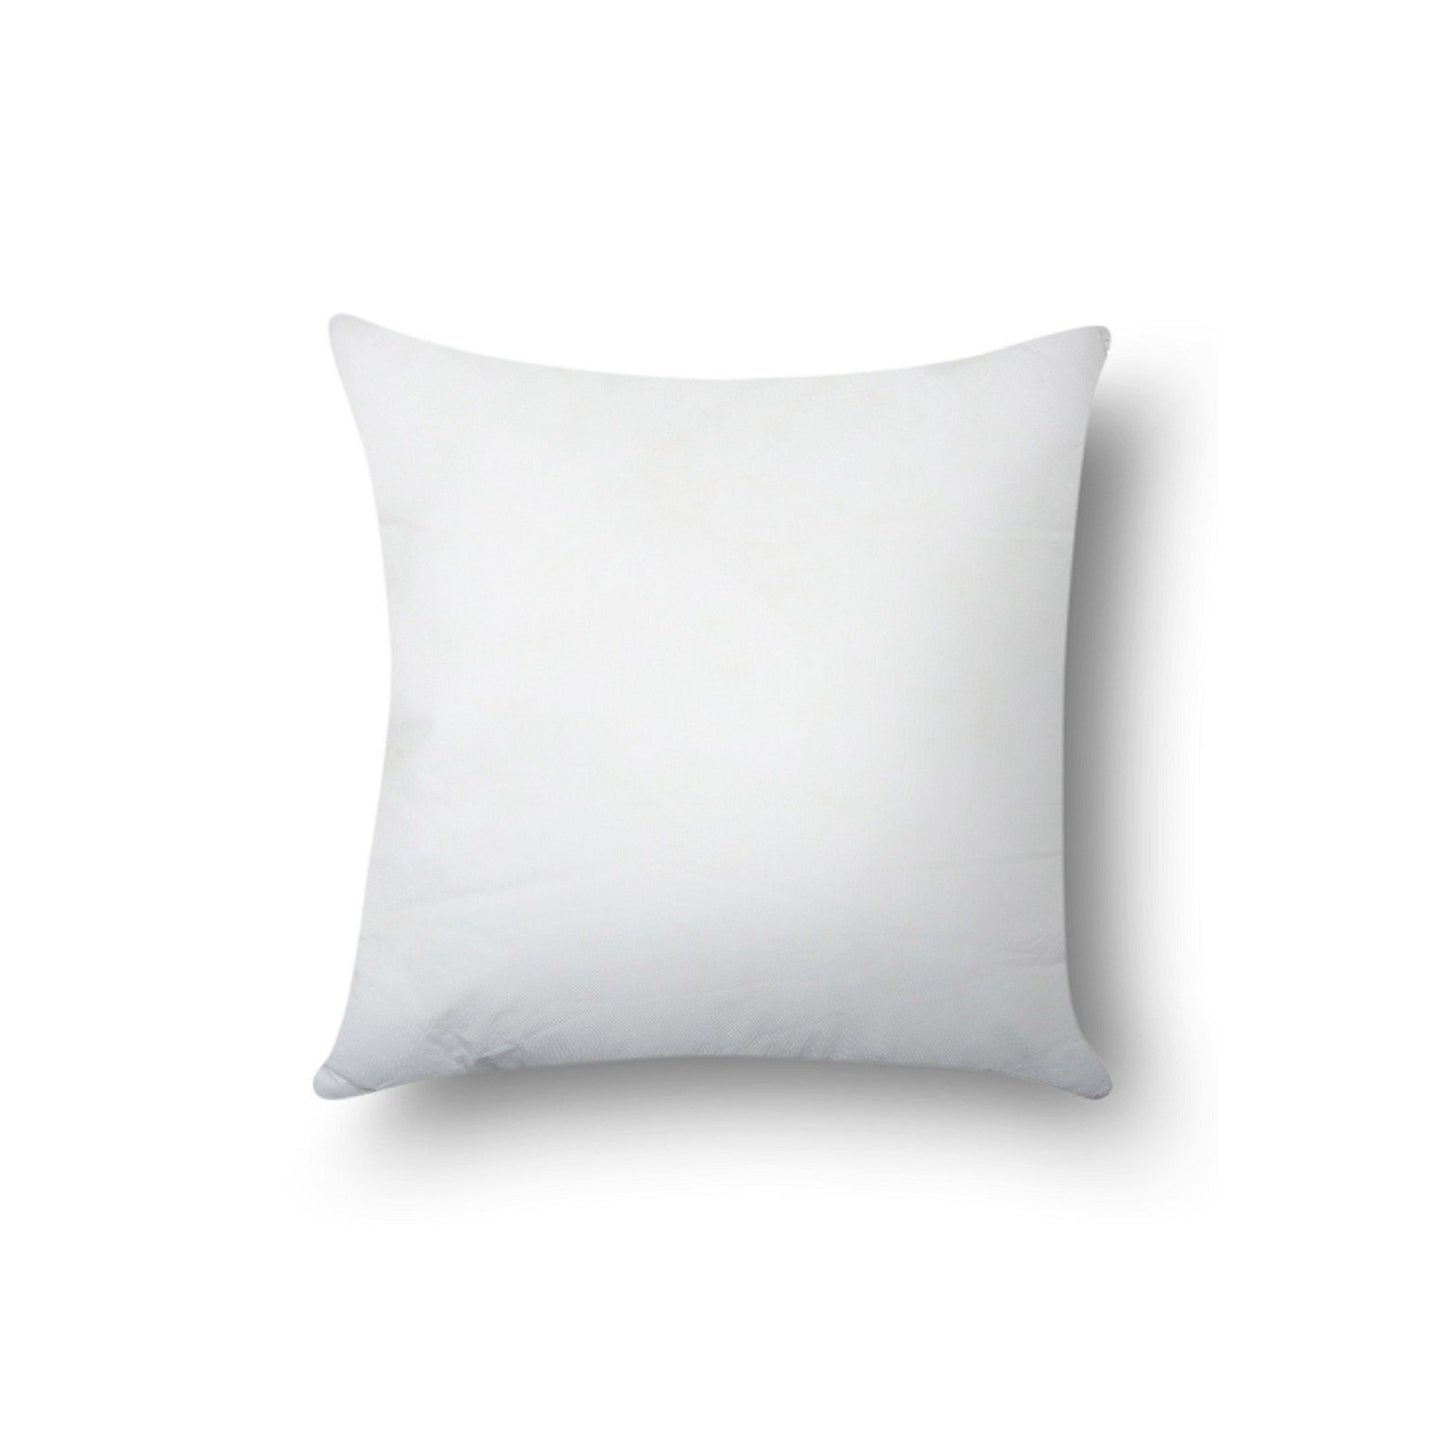 SWHF Cushion Filler 61 X 61 Cm (24 x 24 Inch)